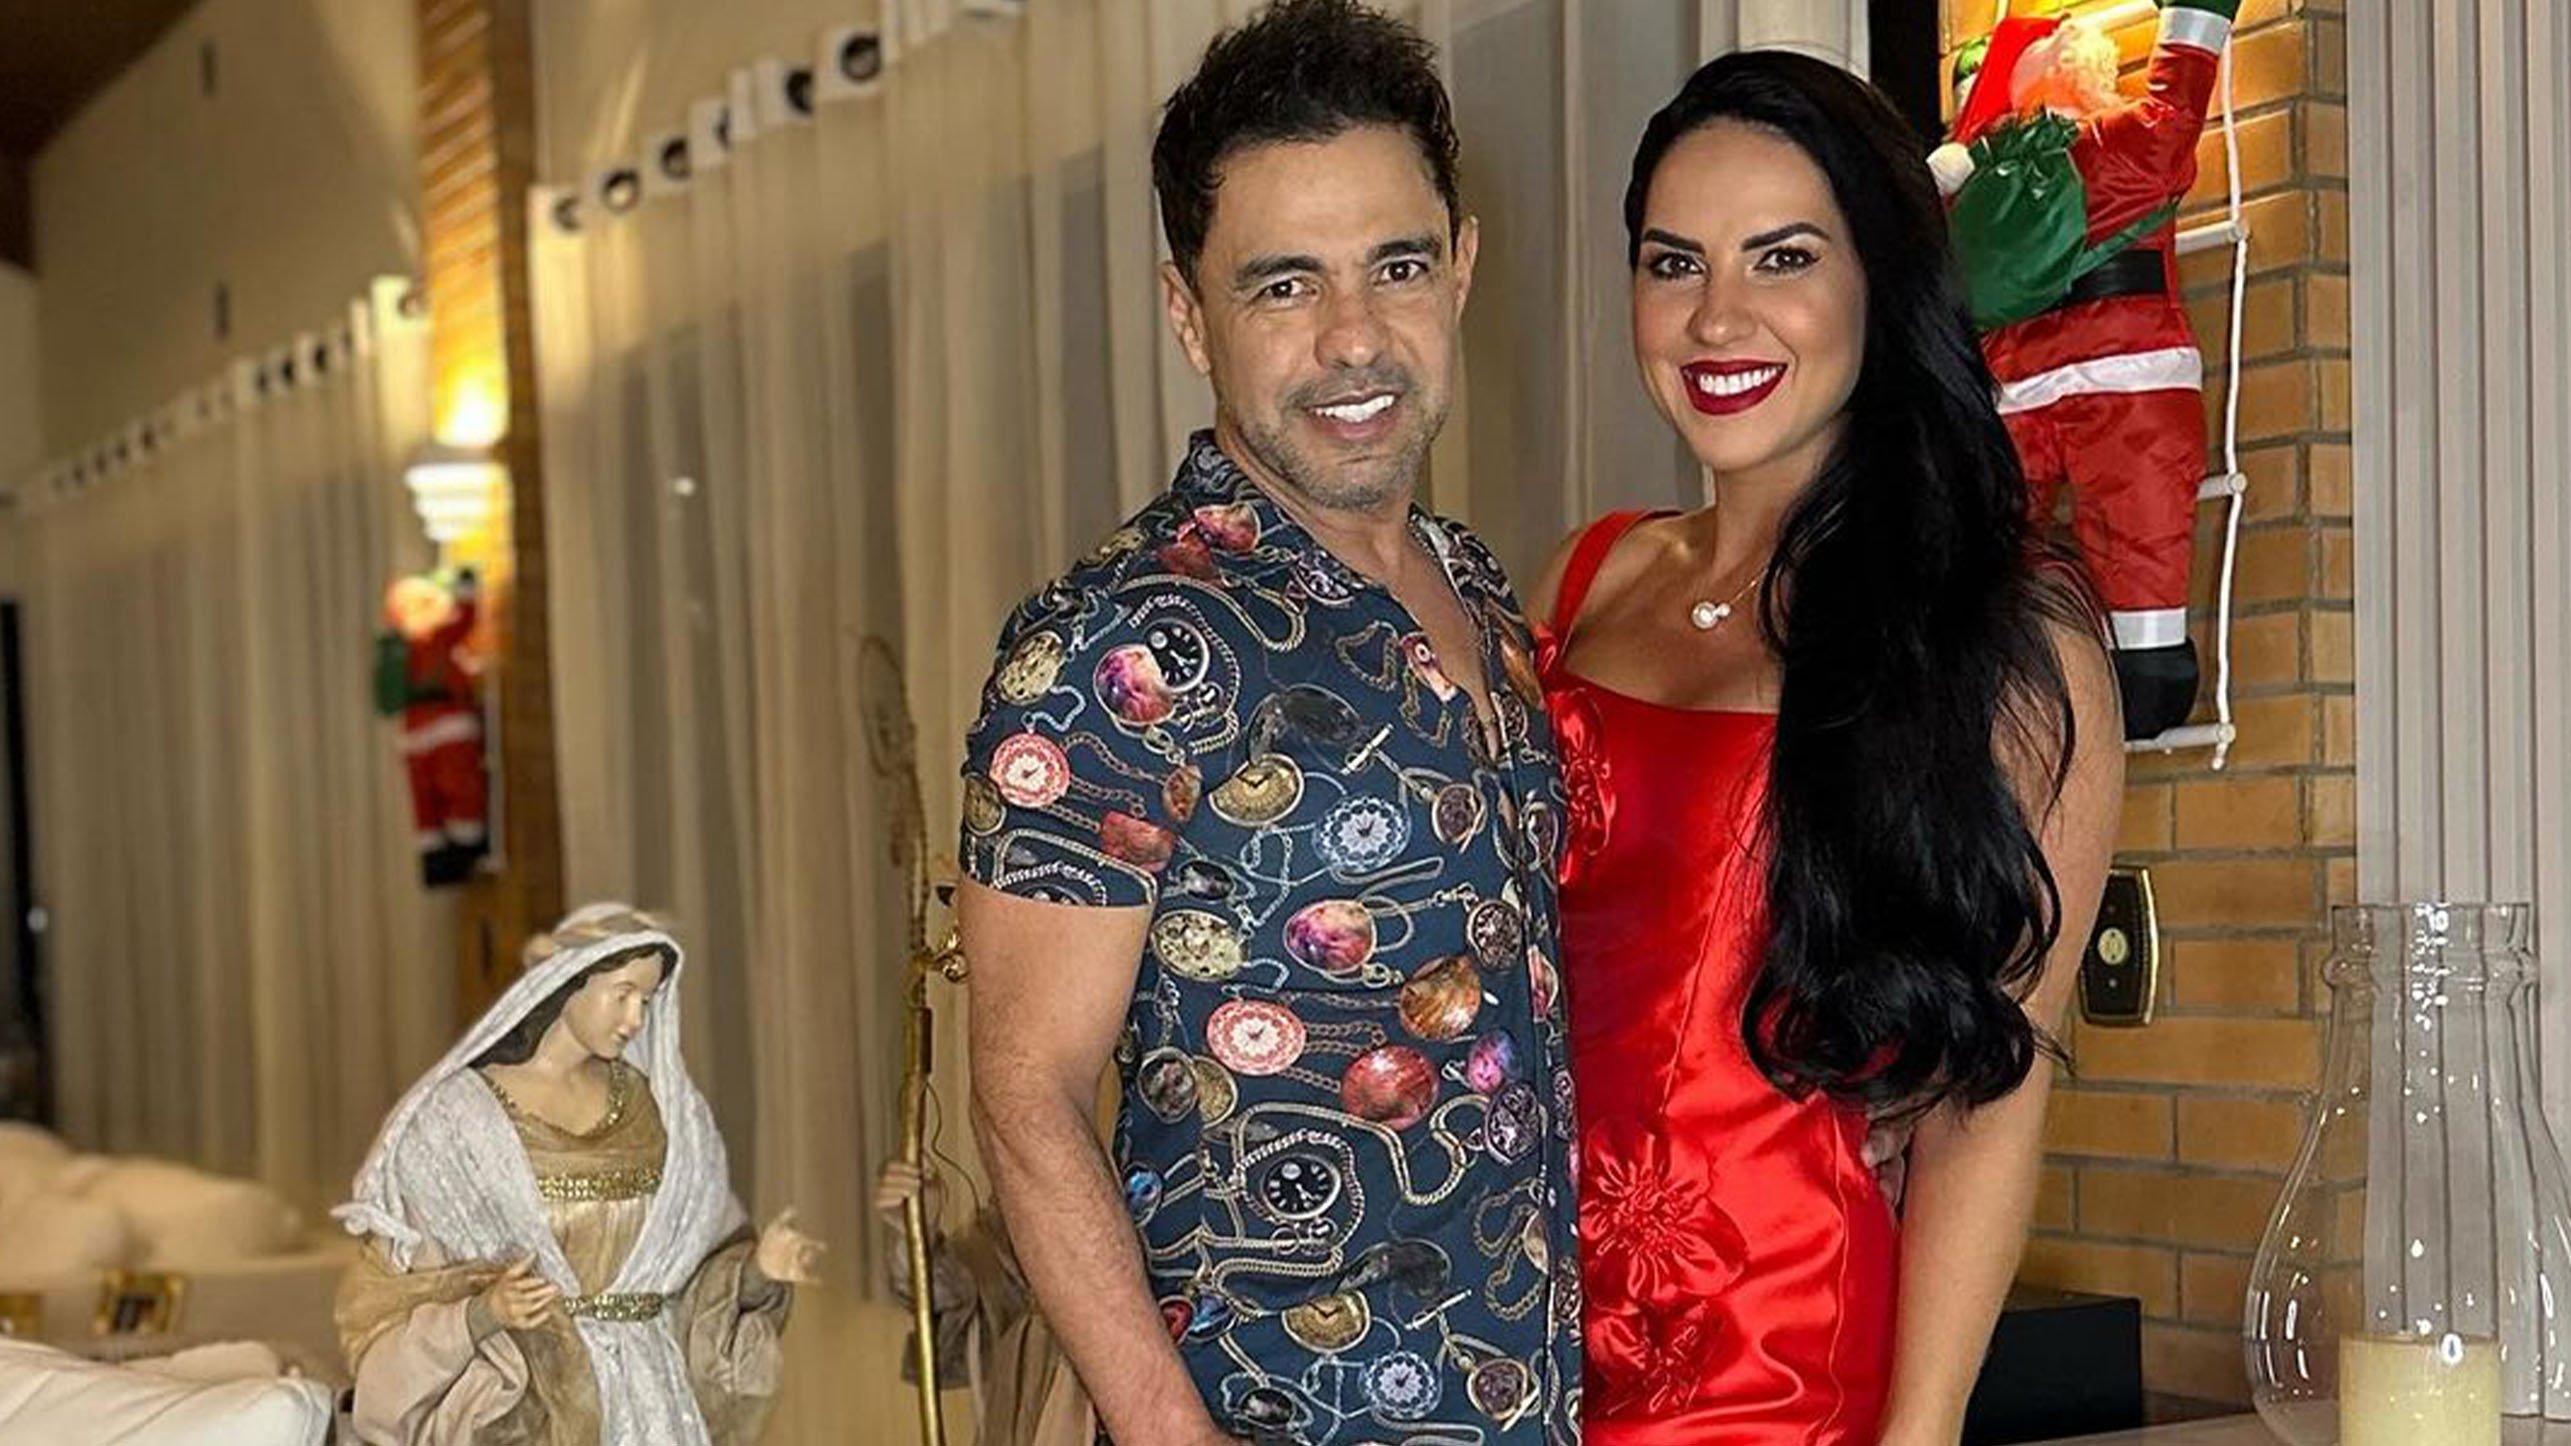 Zezé Di Camargo e Graciele Lacerda passaram a noite juntos com 'parte da família', como ela escreveu no Instagram, na fazenda do cantor